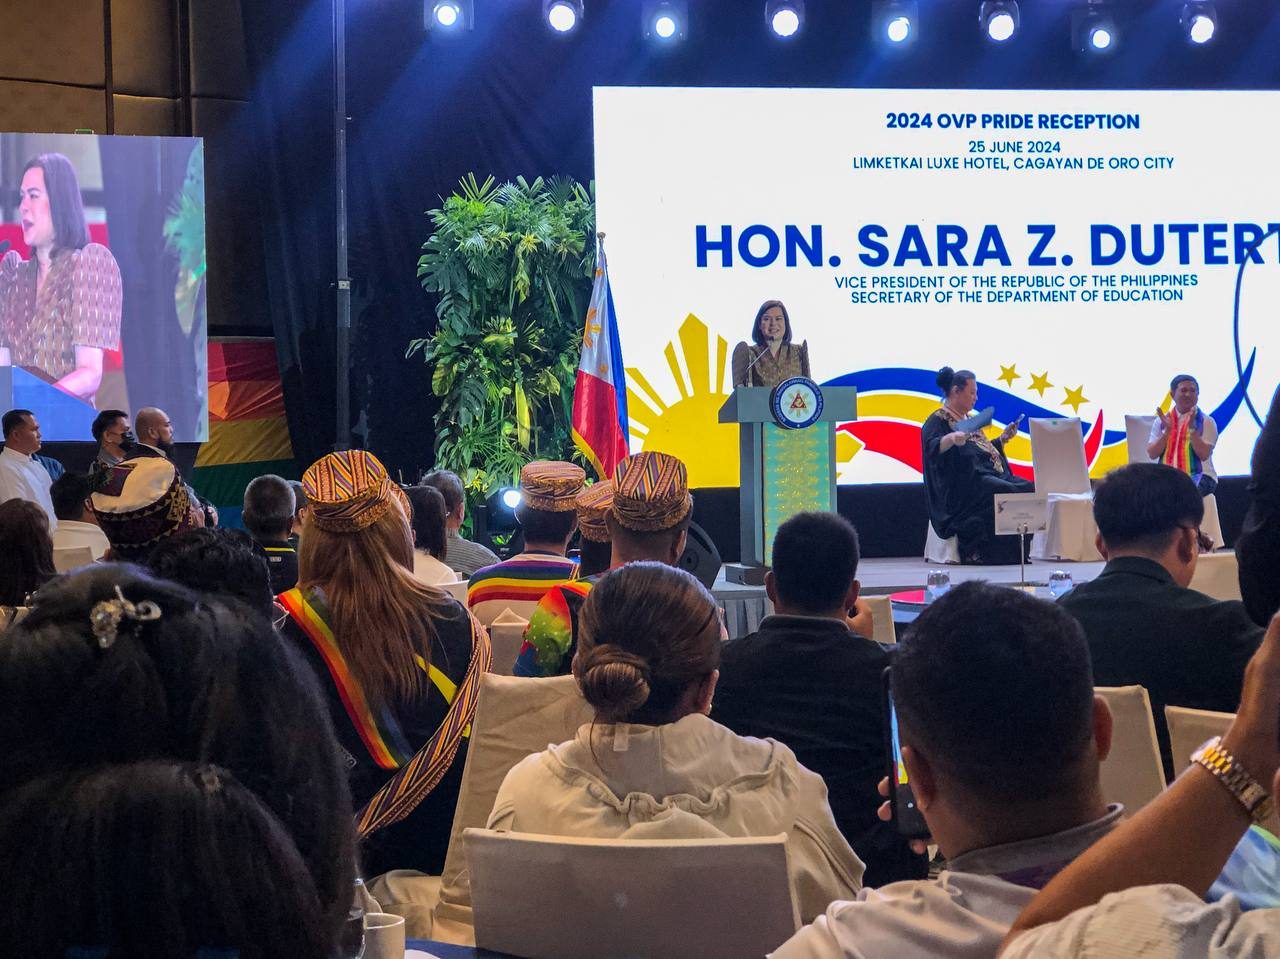 Sara Duterte in Cagayan de Oro